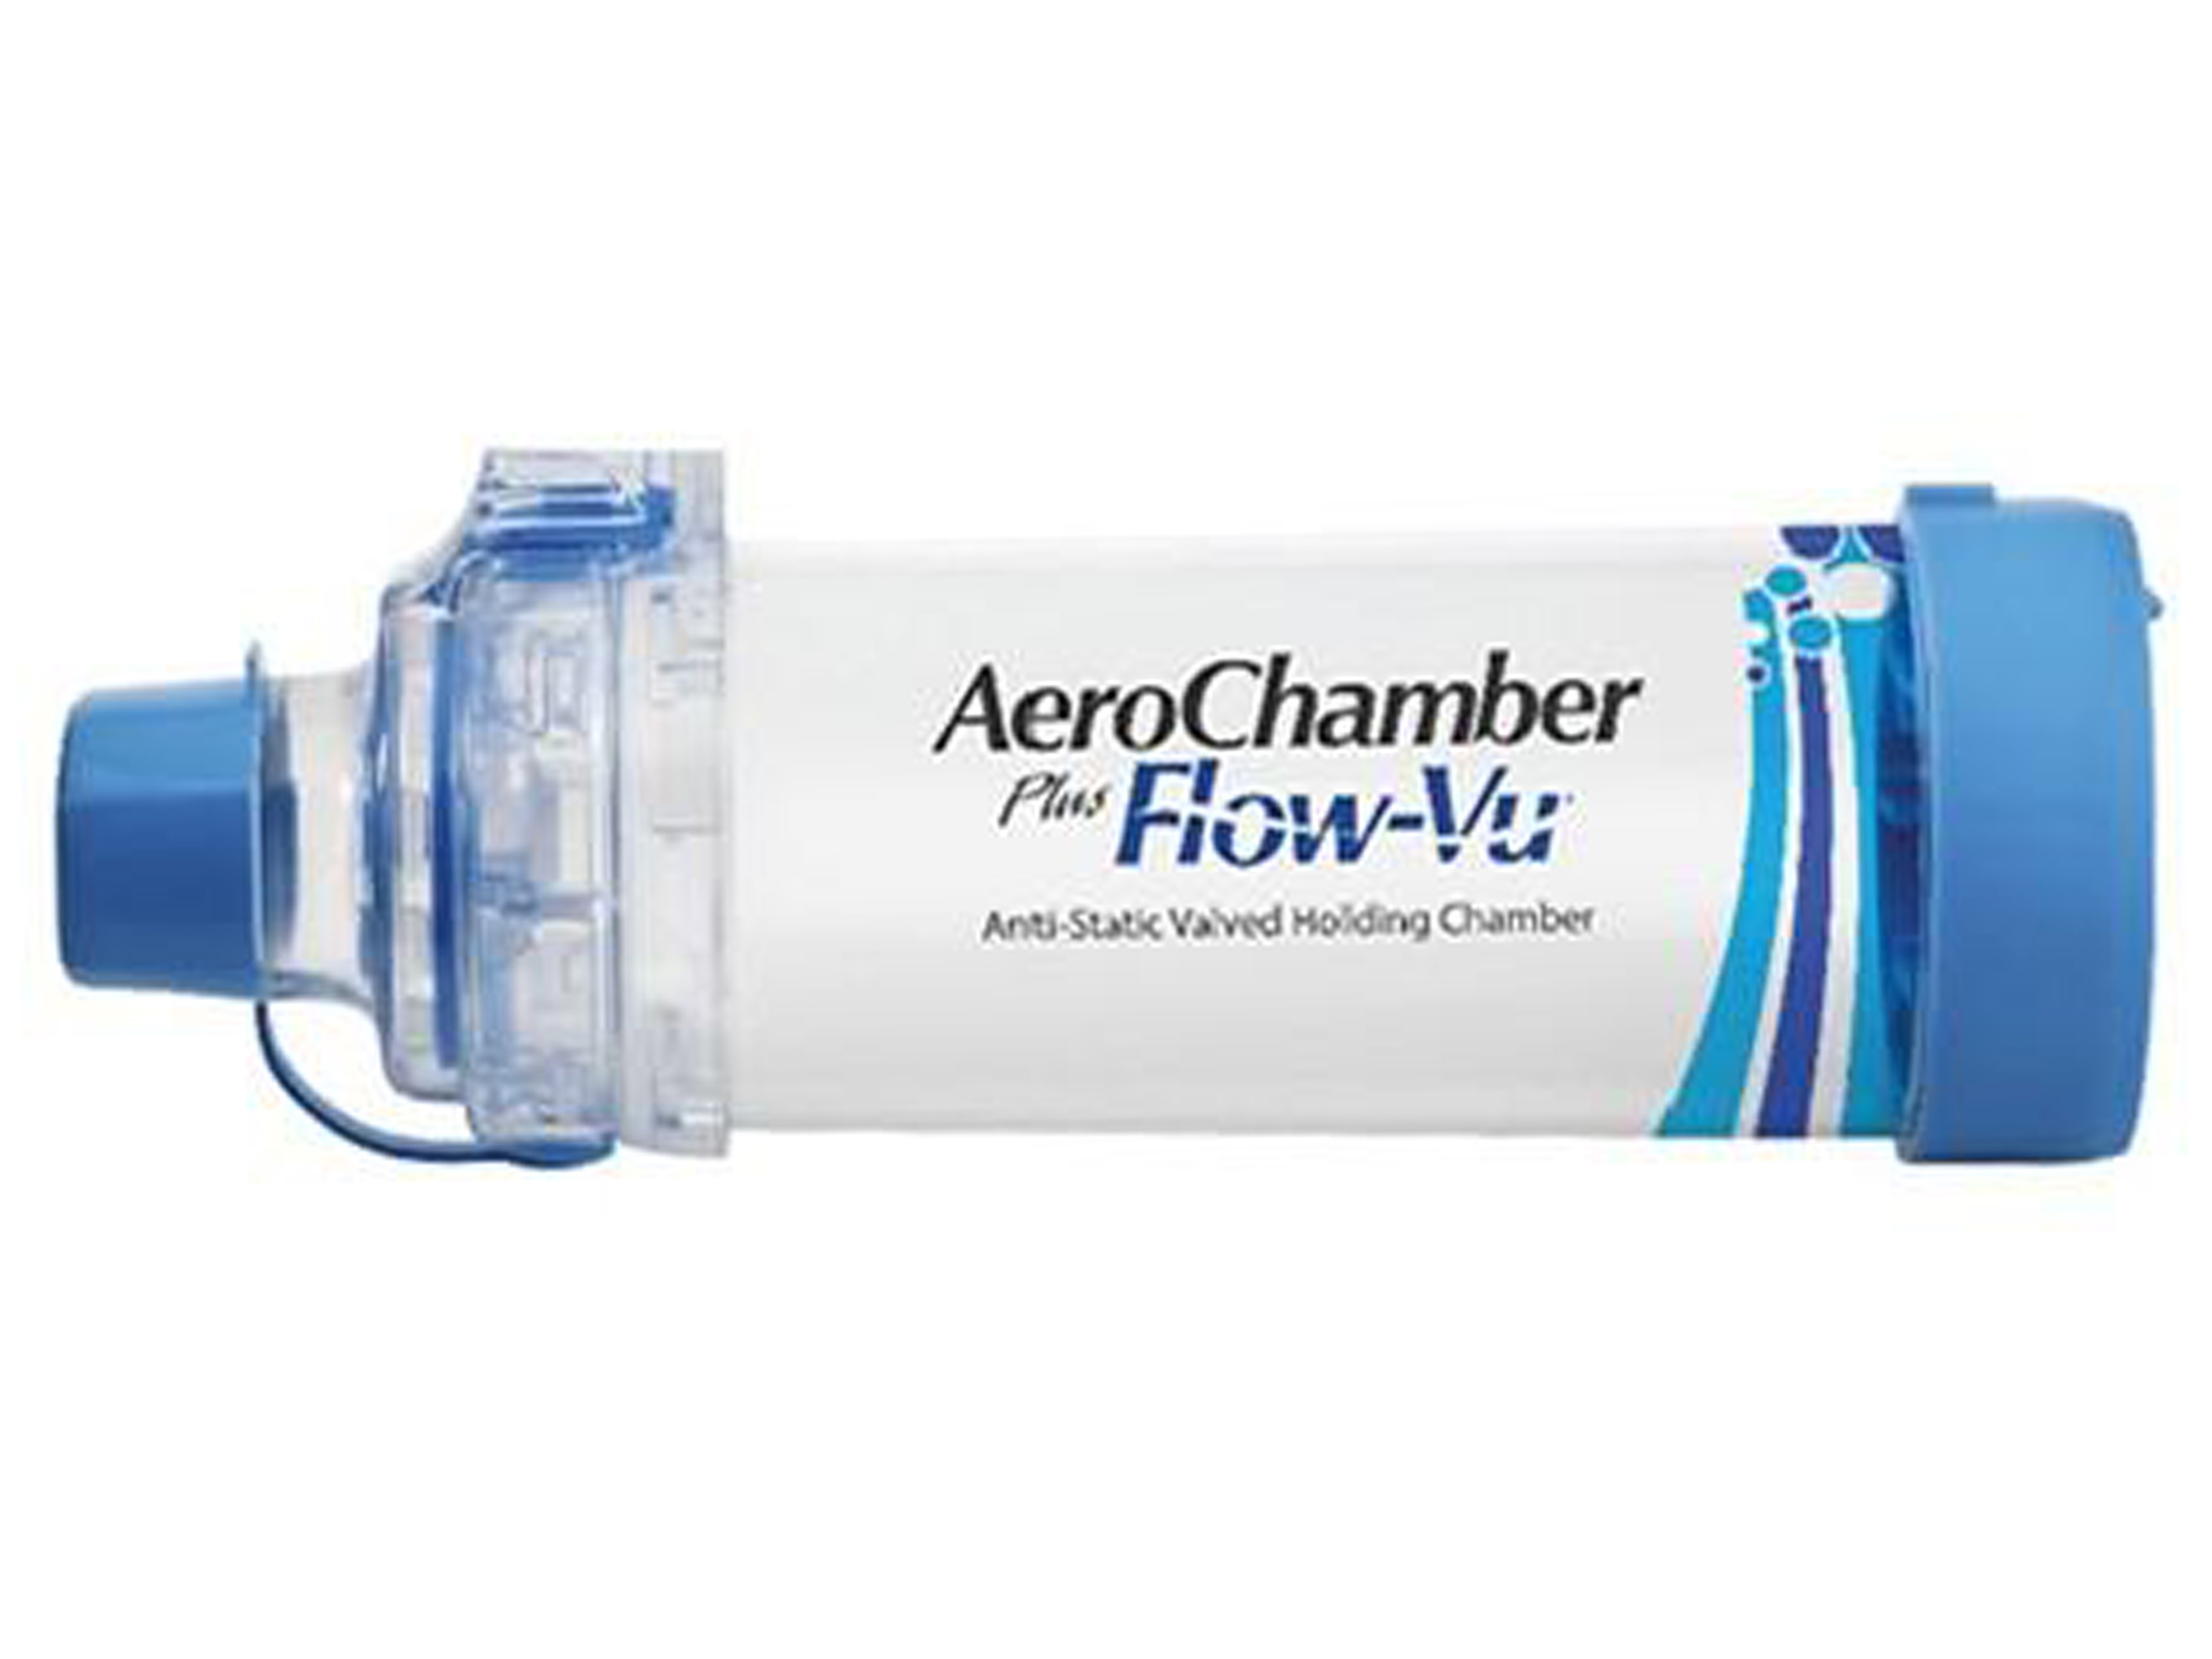 Aerochamber PlusFlow-Vu munnstykke, inhalasjonskammer med munnstykke, voksen, 1 stk